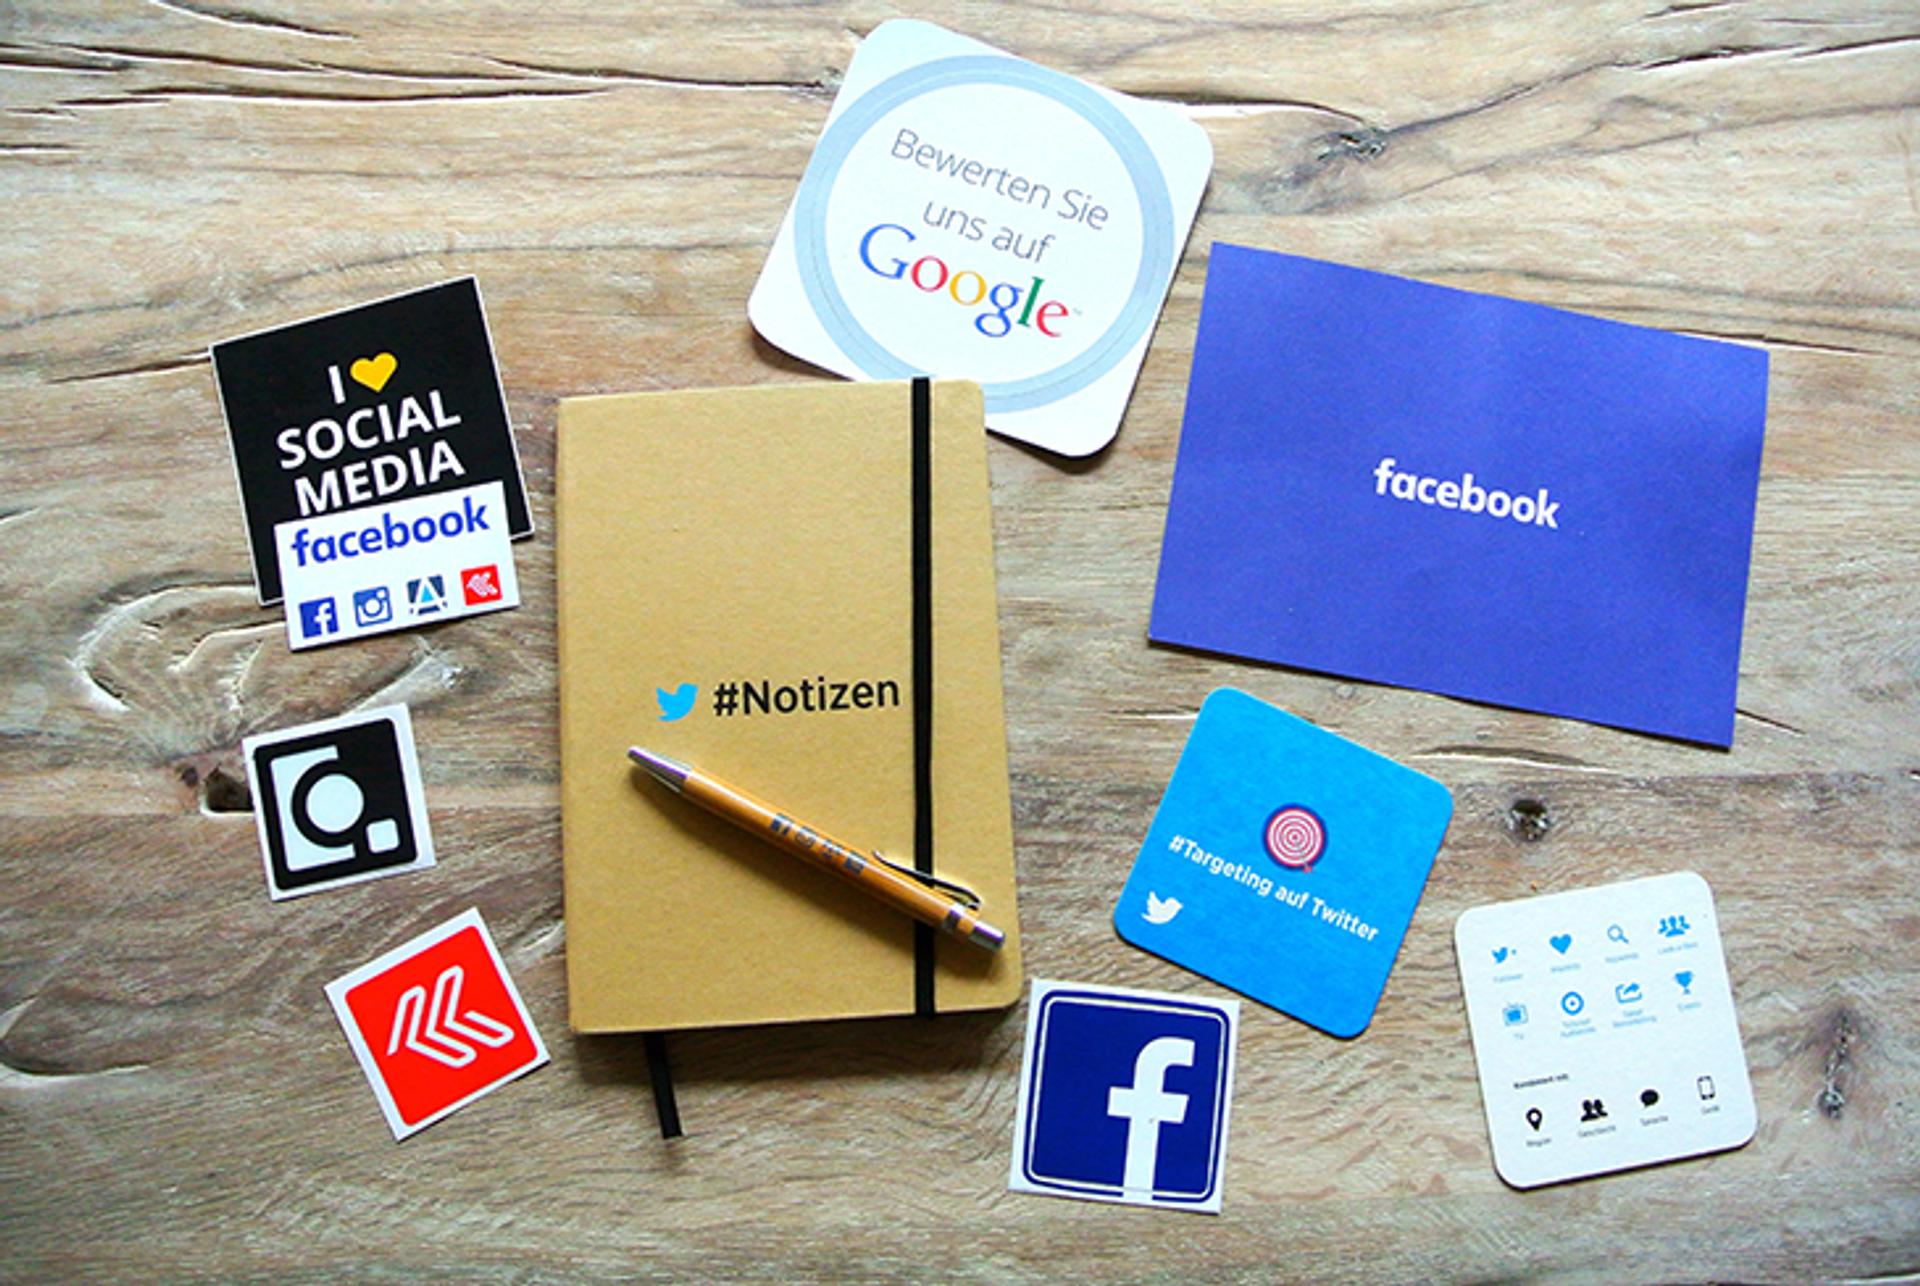 Stickers con logos de redes sociales, como Facebook e Instagram, y una libreta